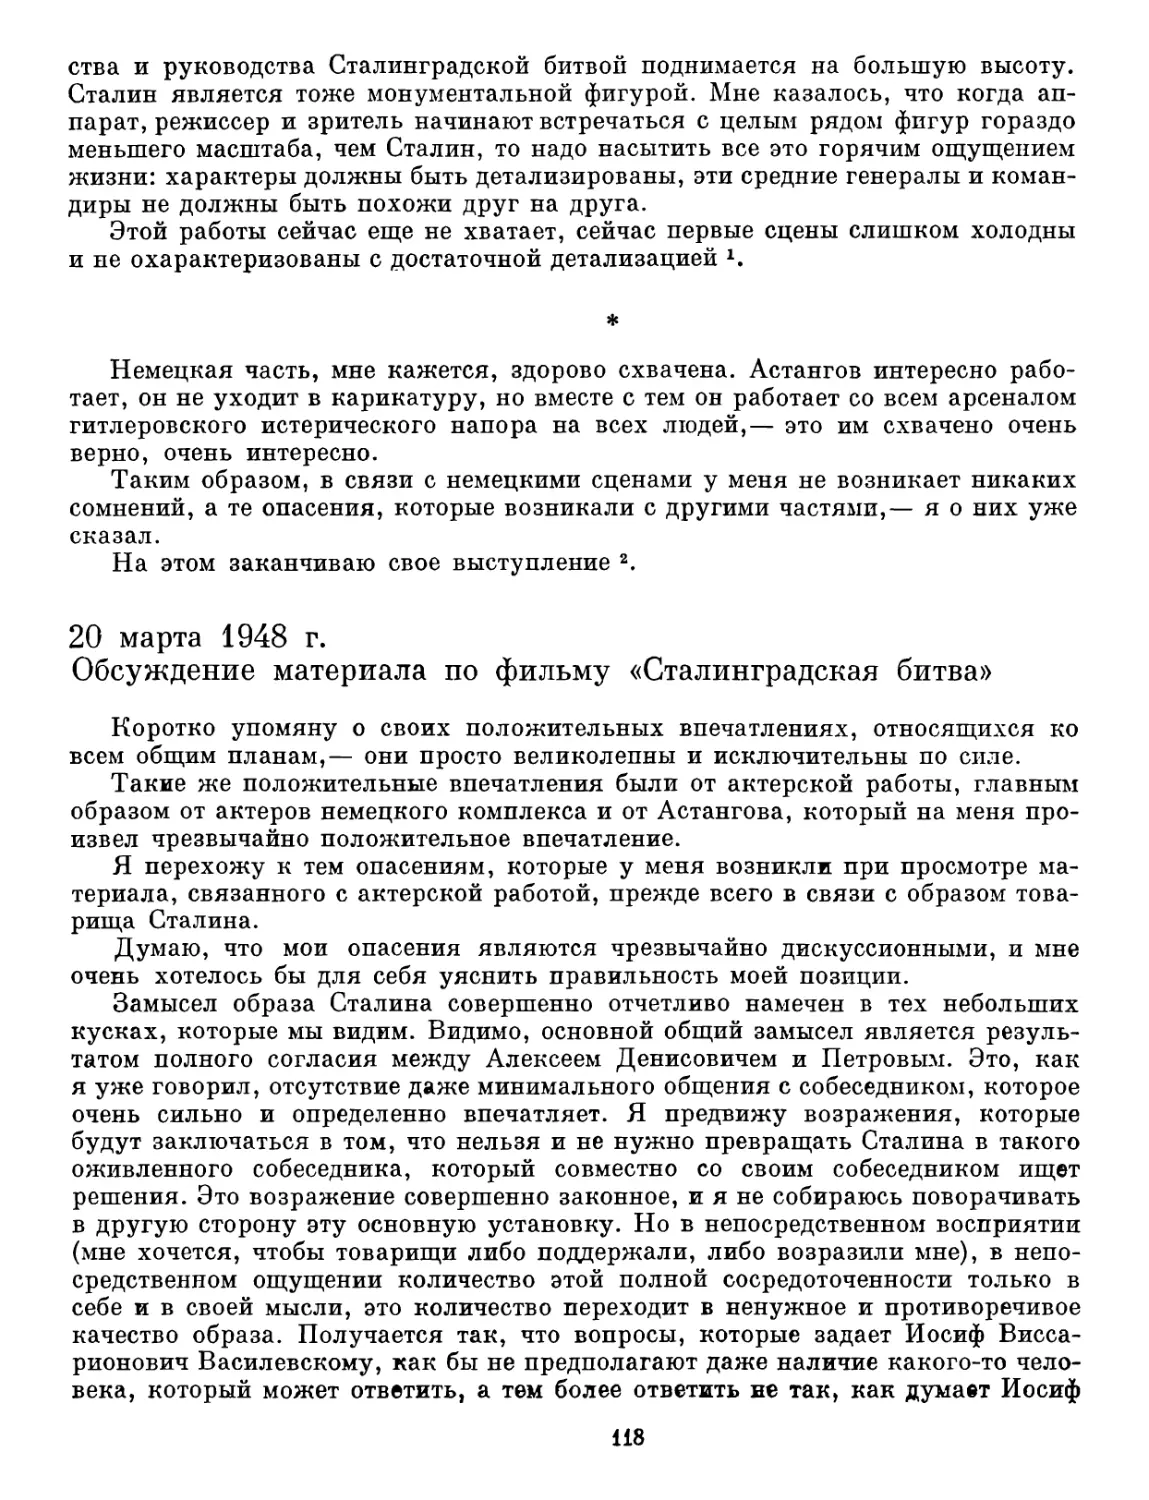 20 марта 1948 г. Обсуждение материала по фильму «Сталинградская битва»